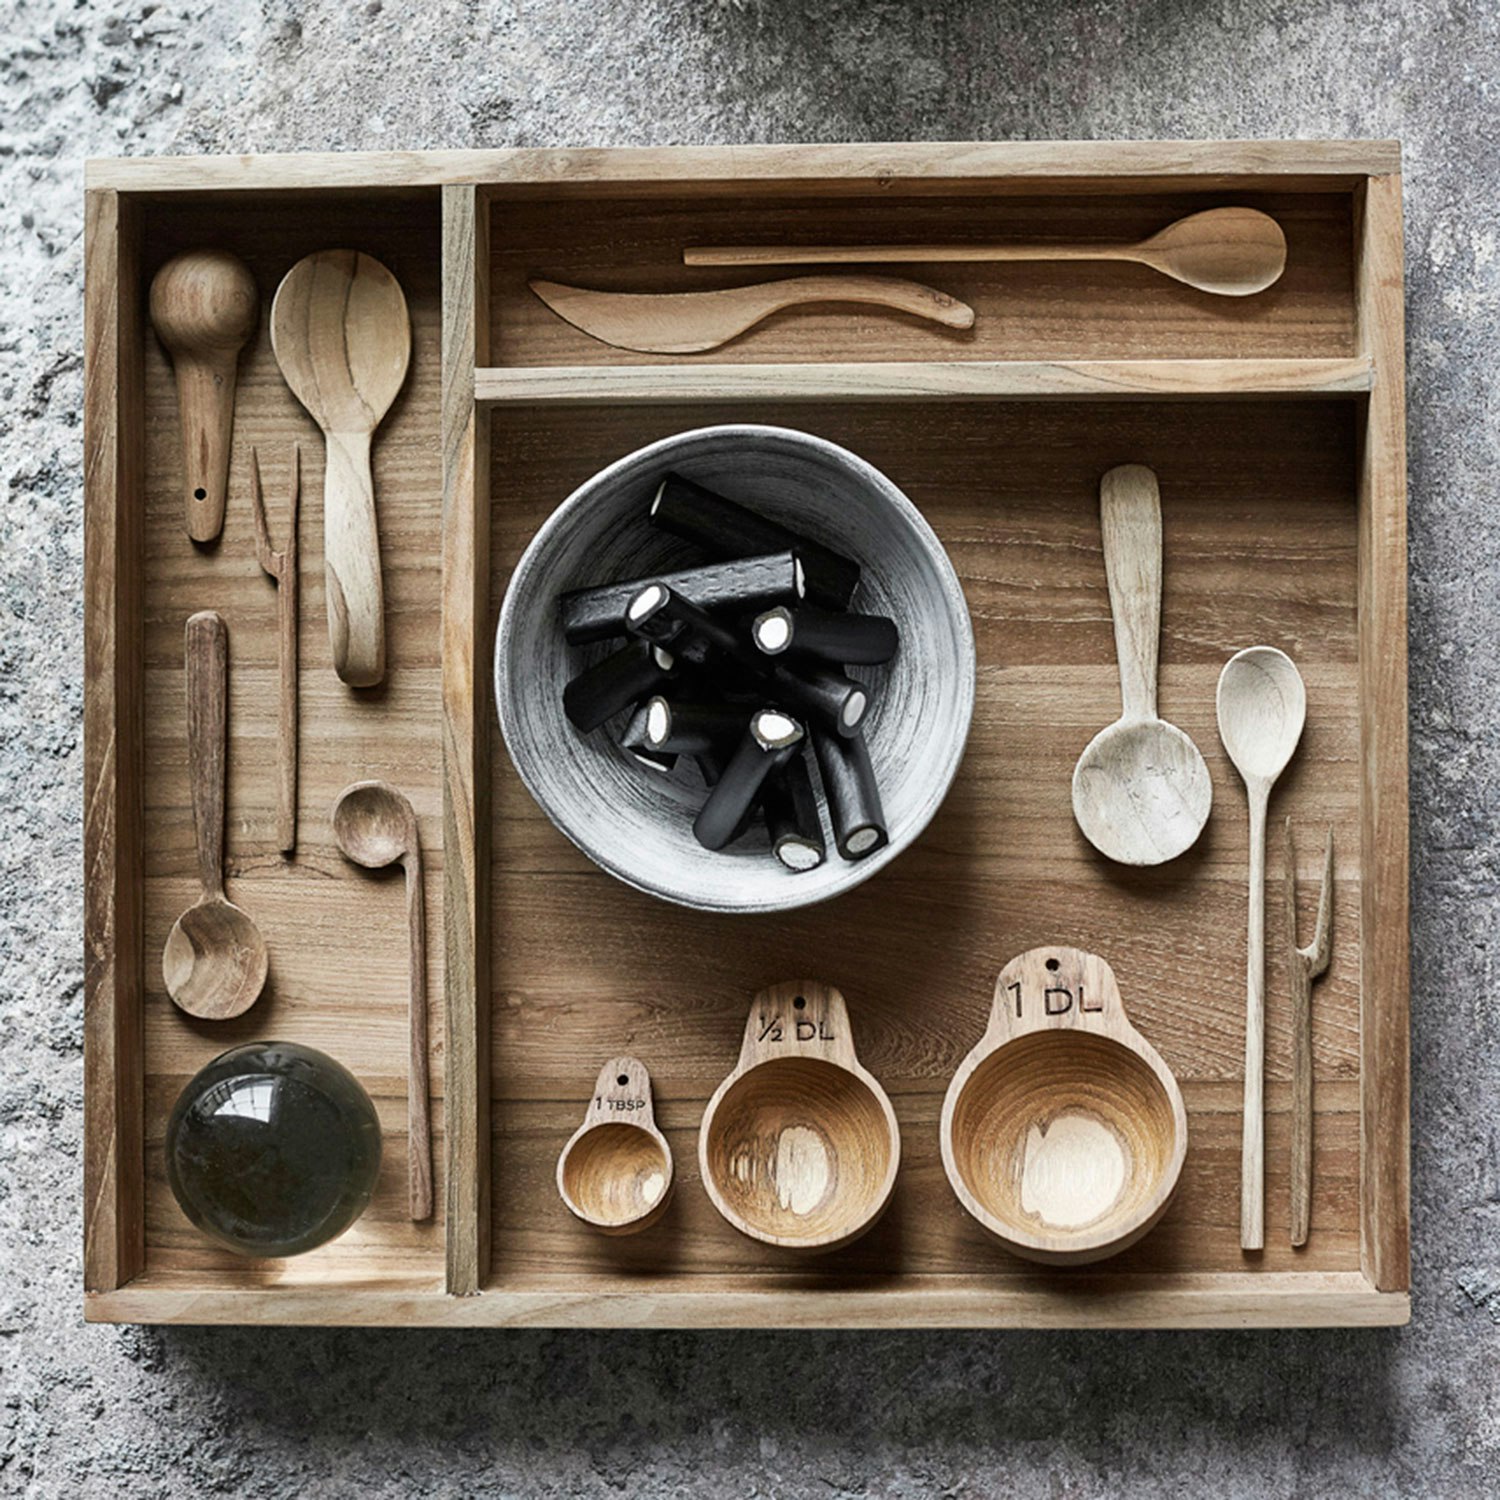 Wooden Measuring Spoon, Set of Spoons Teak Wood Cooking